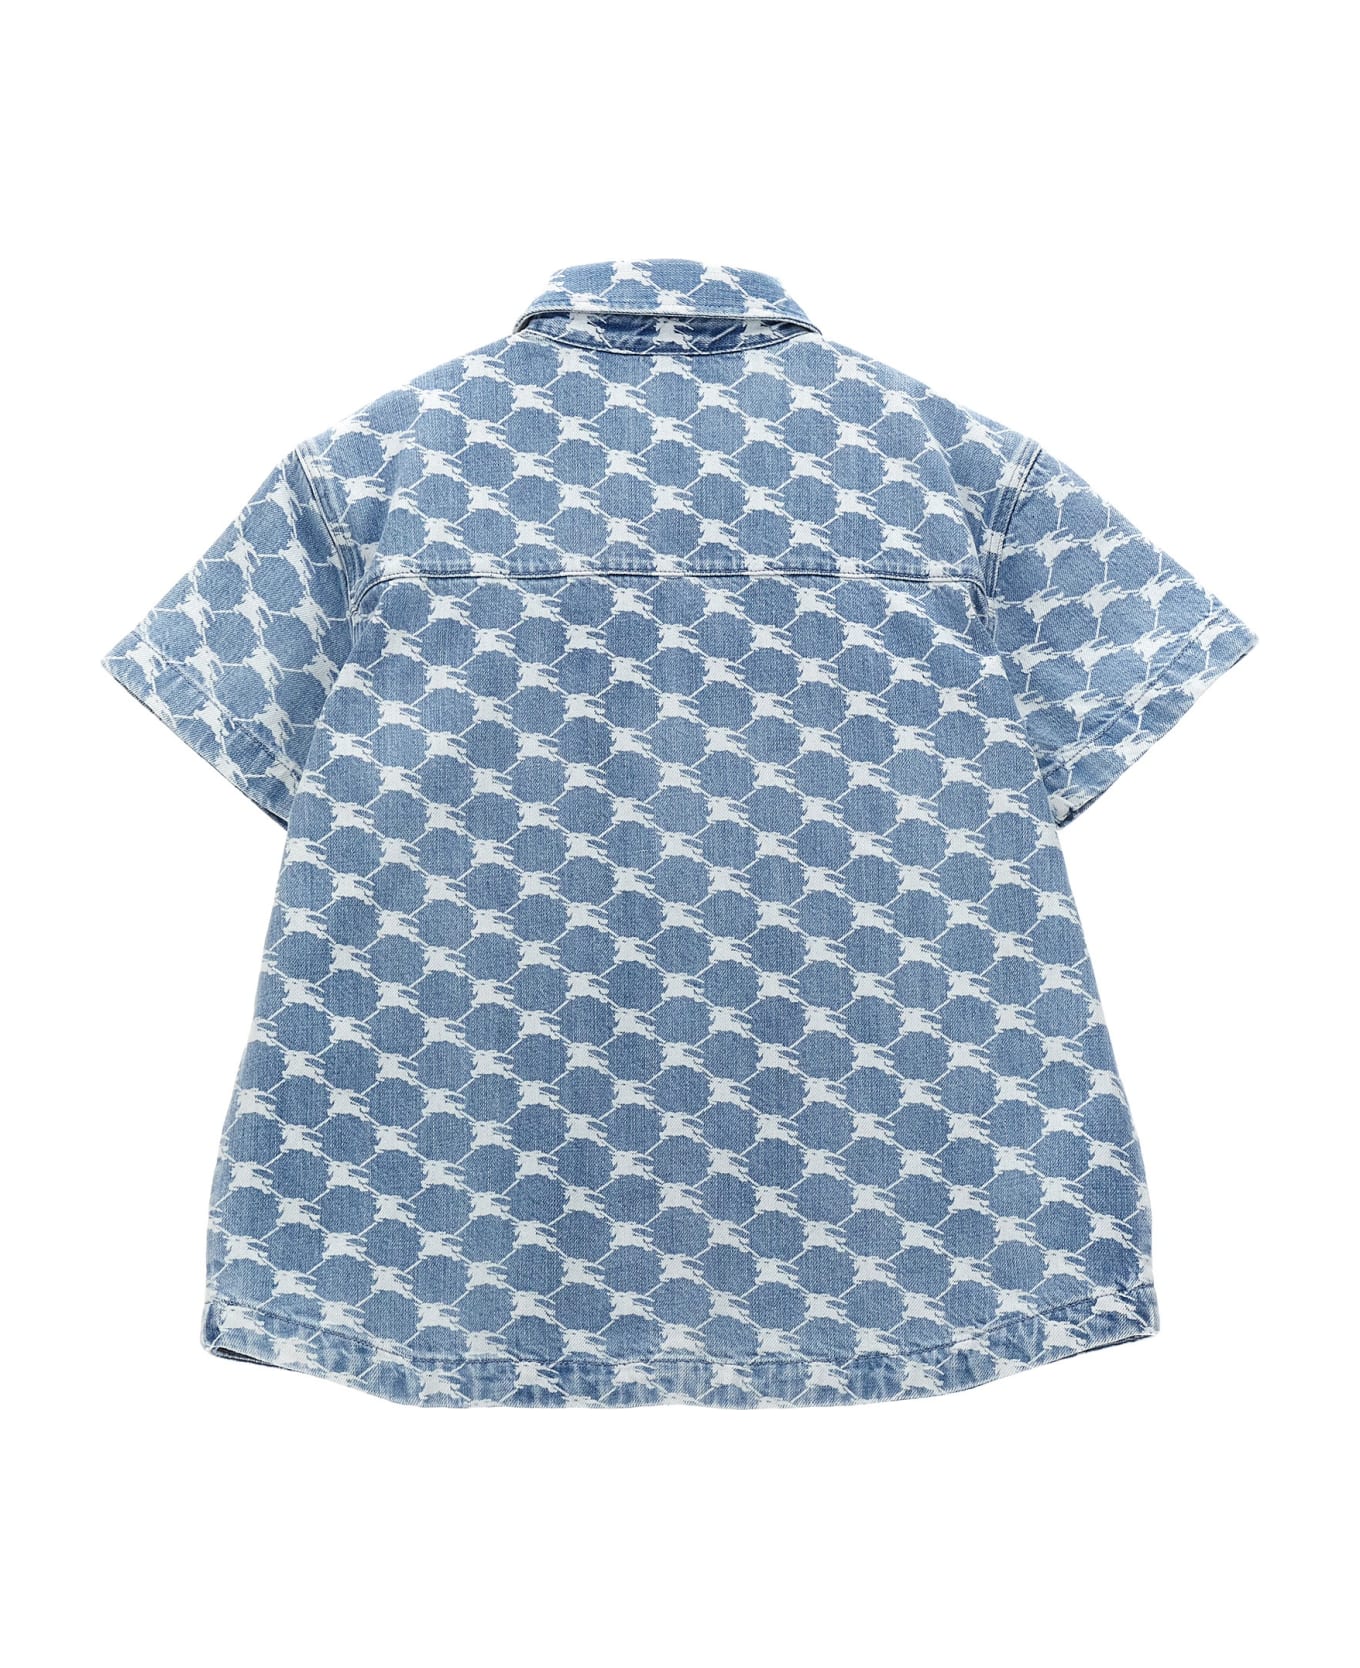 Burberry 'alan' Shirt - Light Blue シャツ